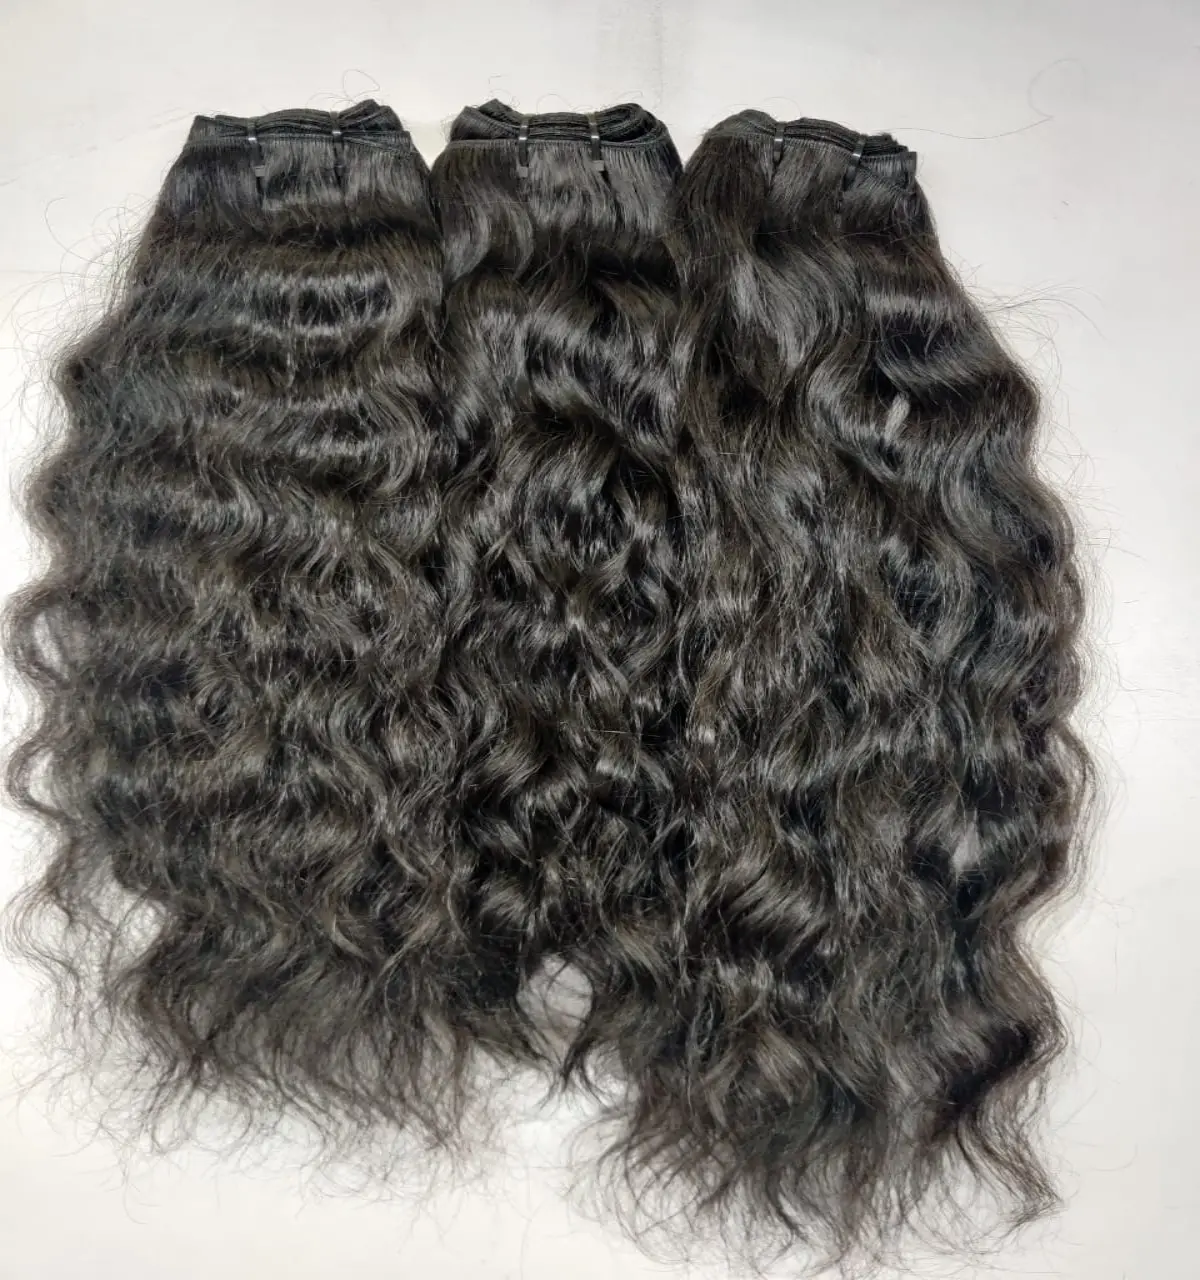 Extensiones de cabello indio ondulado de larga duración, sin caída, enredados y rasgados, la mejor